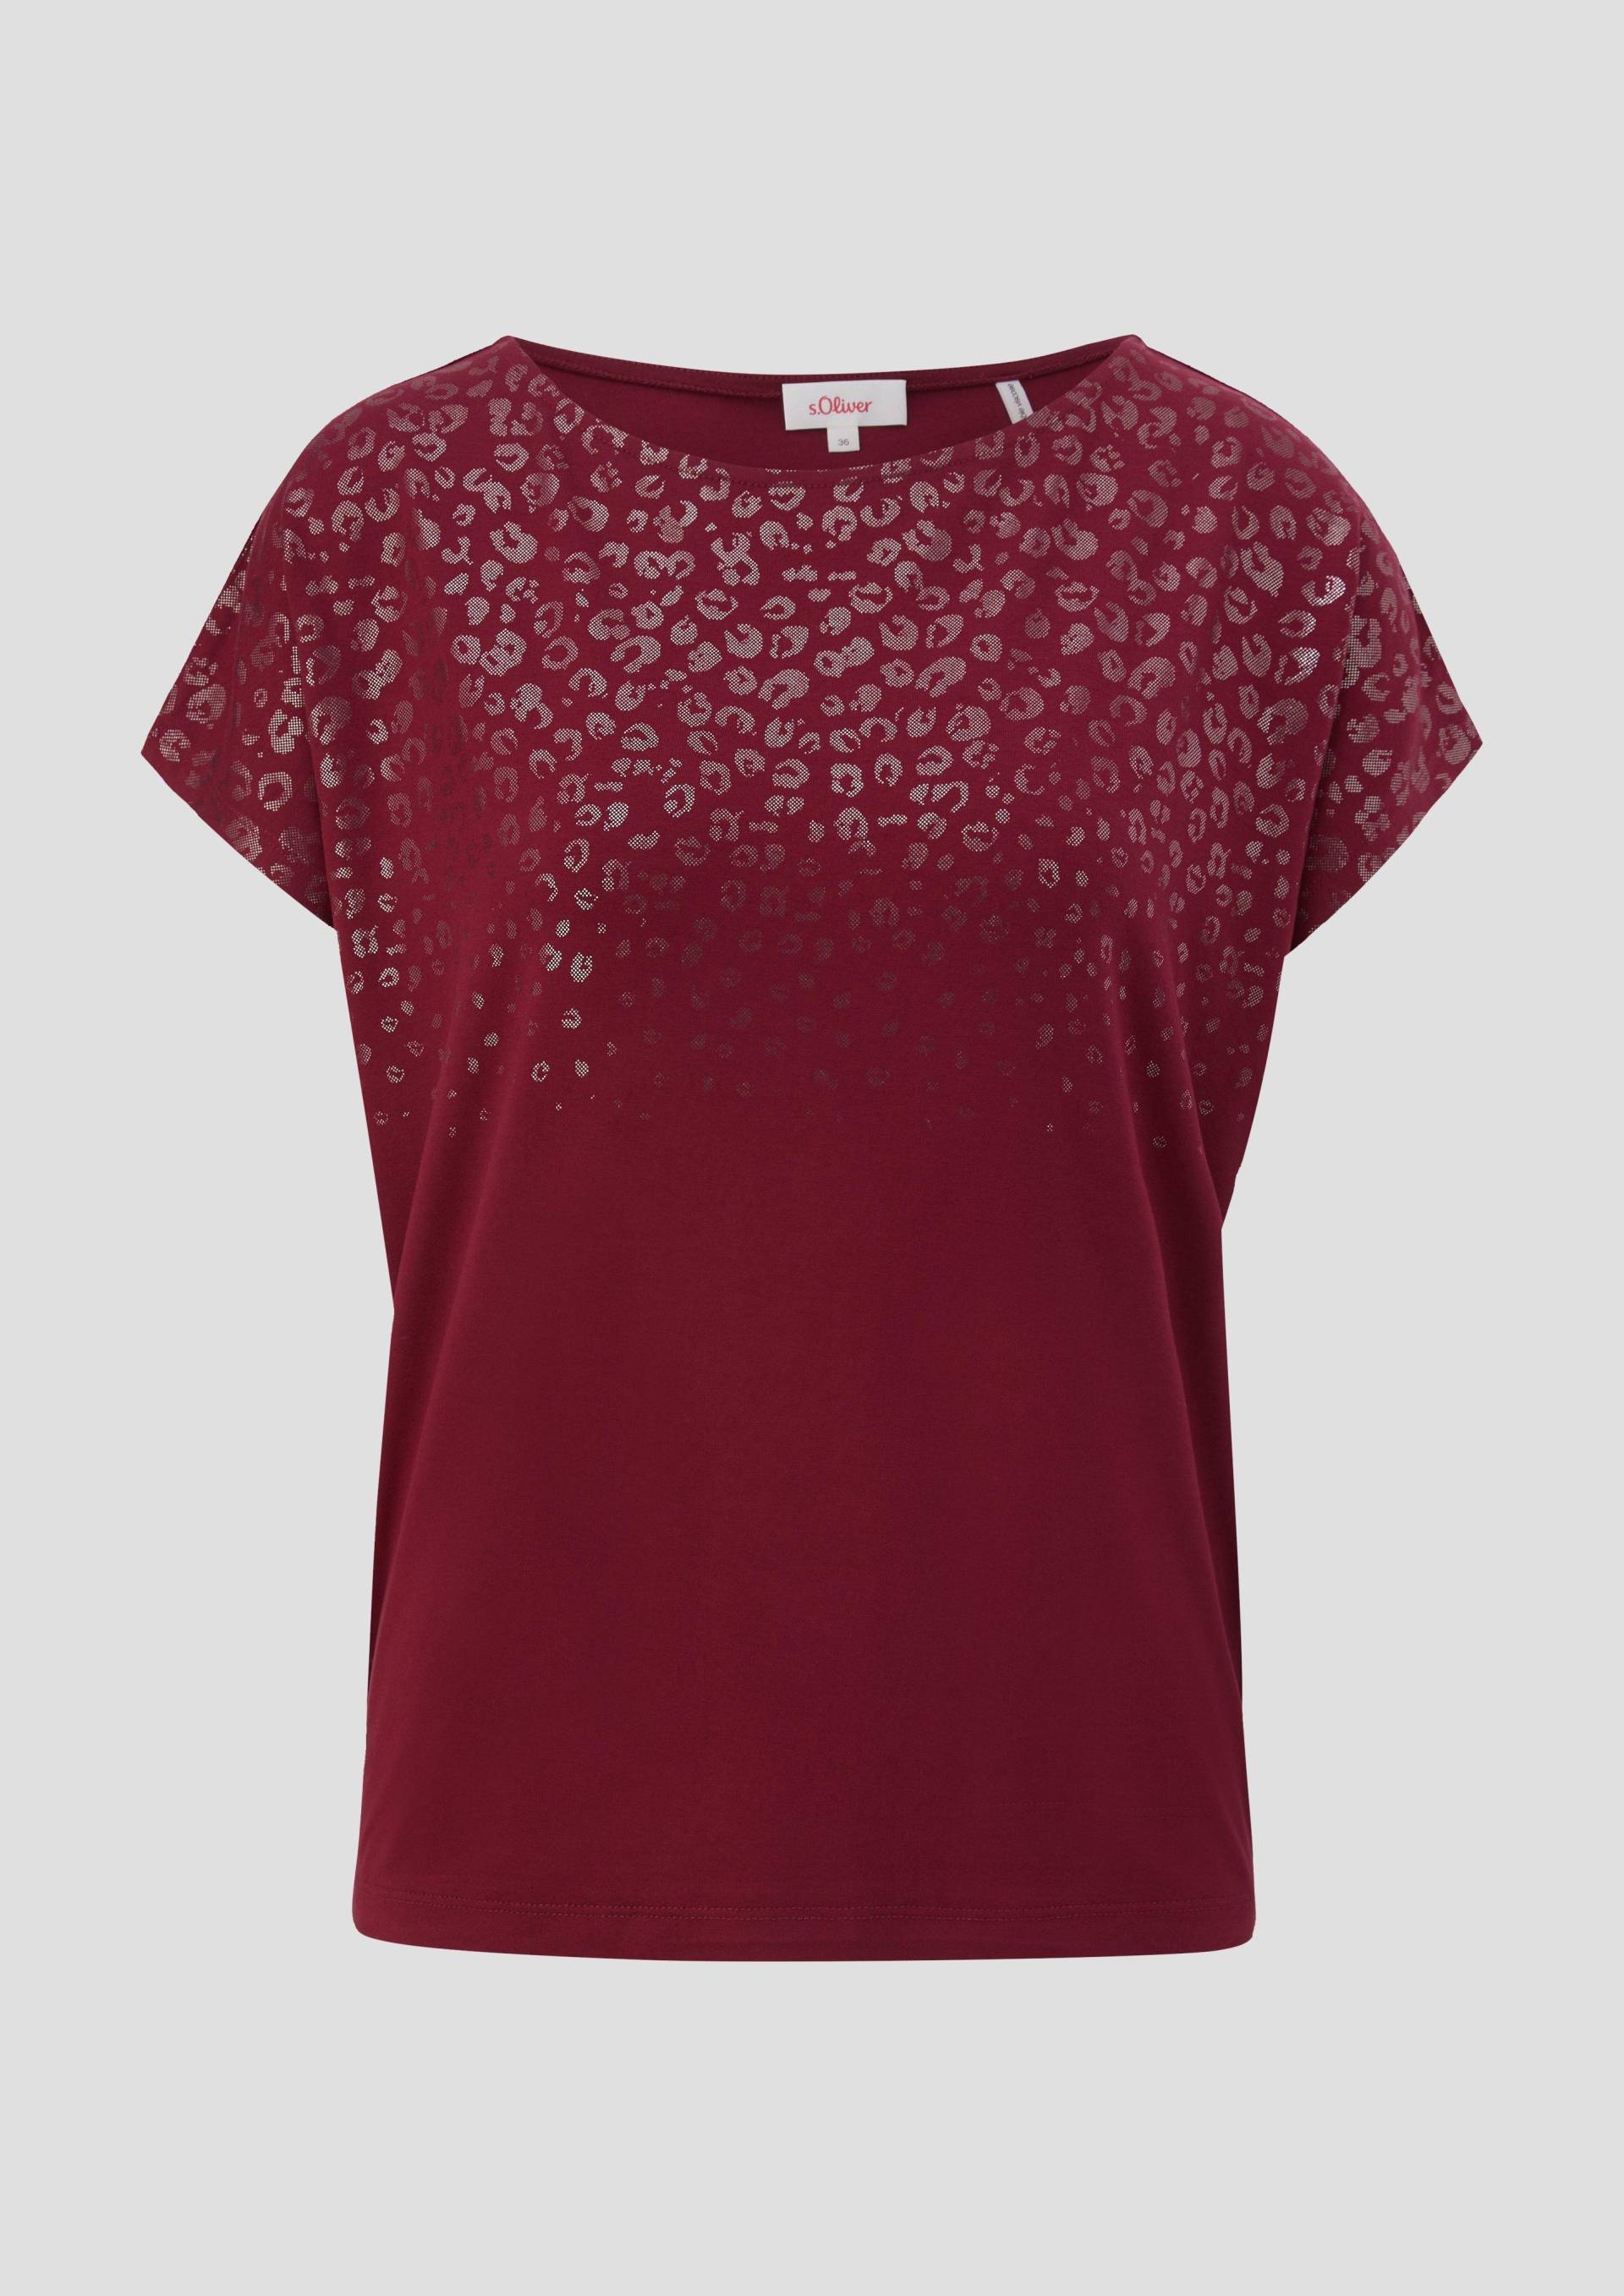 s.Oliver - Ärmelloses Shirt mit Folienprint, Damen, rot von s.Oliver